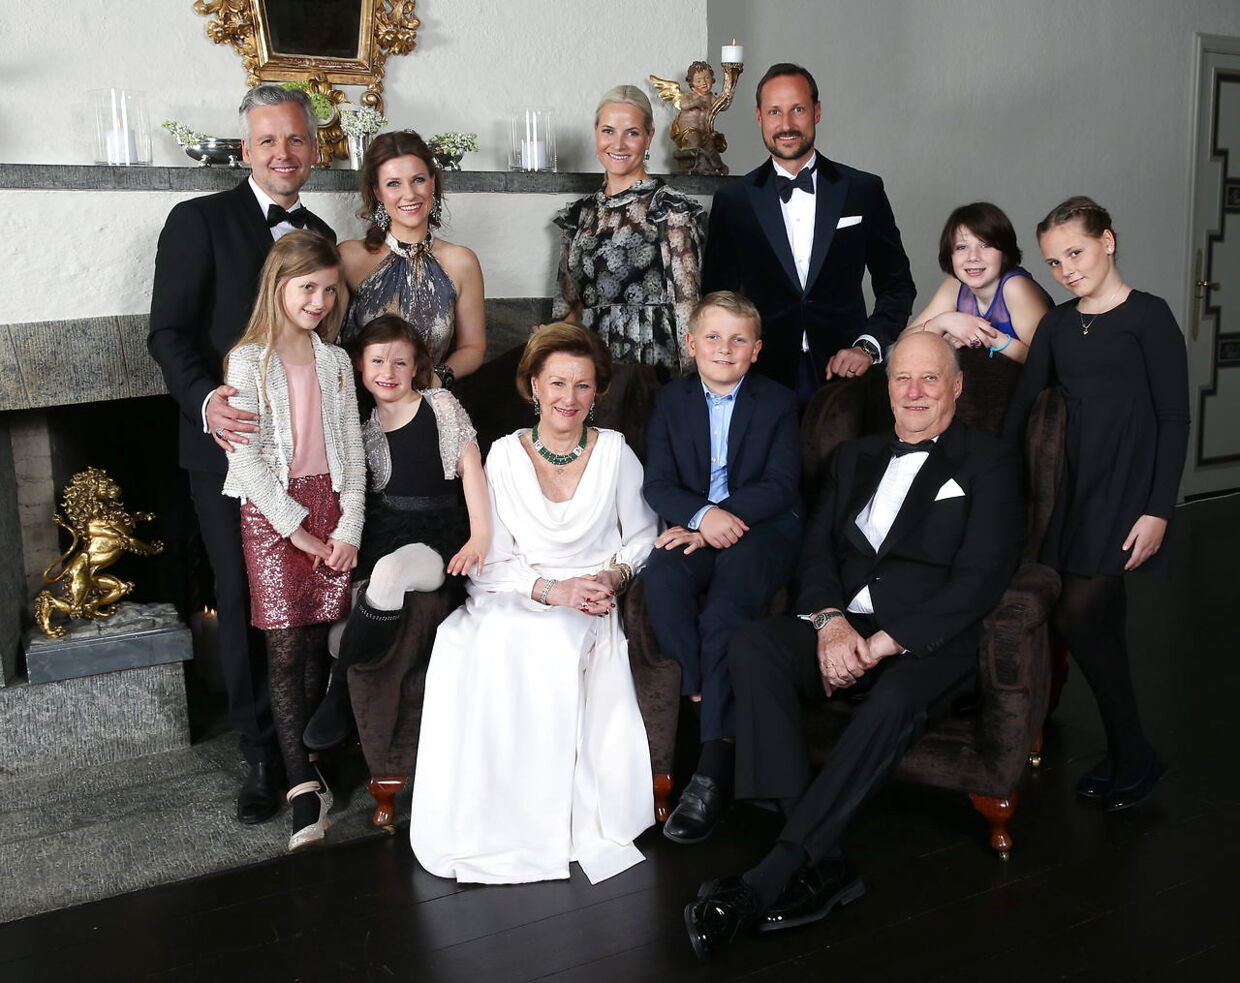 Den norske kongefamilie samlet i januar i anledning af kong Haralds 25 års jubilæum som regent. Fra venstre er det Ari Behn, Leah Isadora, Emma Tallulah, prinsesse Märtha Louise, dronning Sonja, kronprinsesse Mette Marit, prins Sverre Magnus, kronprins Haakon, kong Harald, Maud Angelica og prinsesse Ingrid Alexandra.